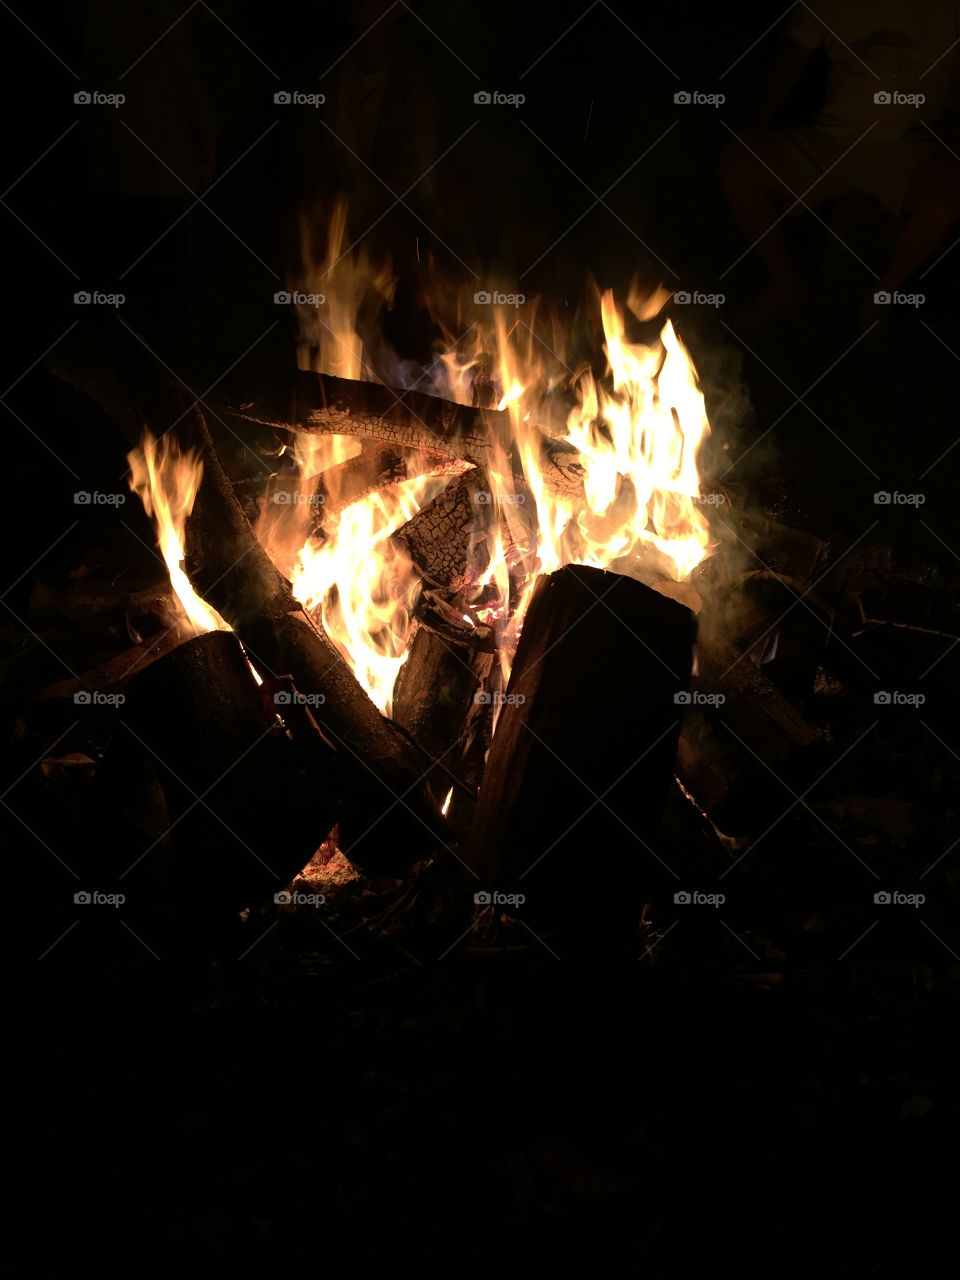 Beautifully done campfire at night 